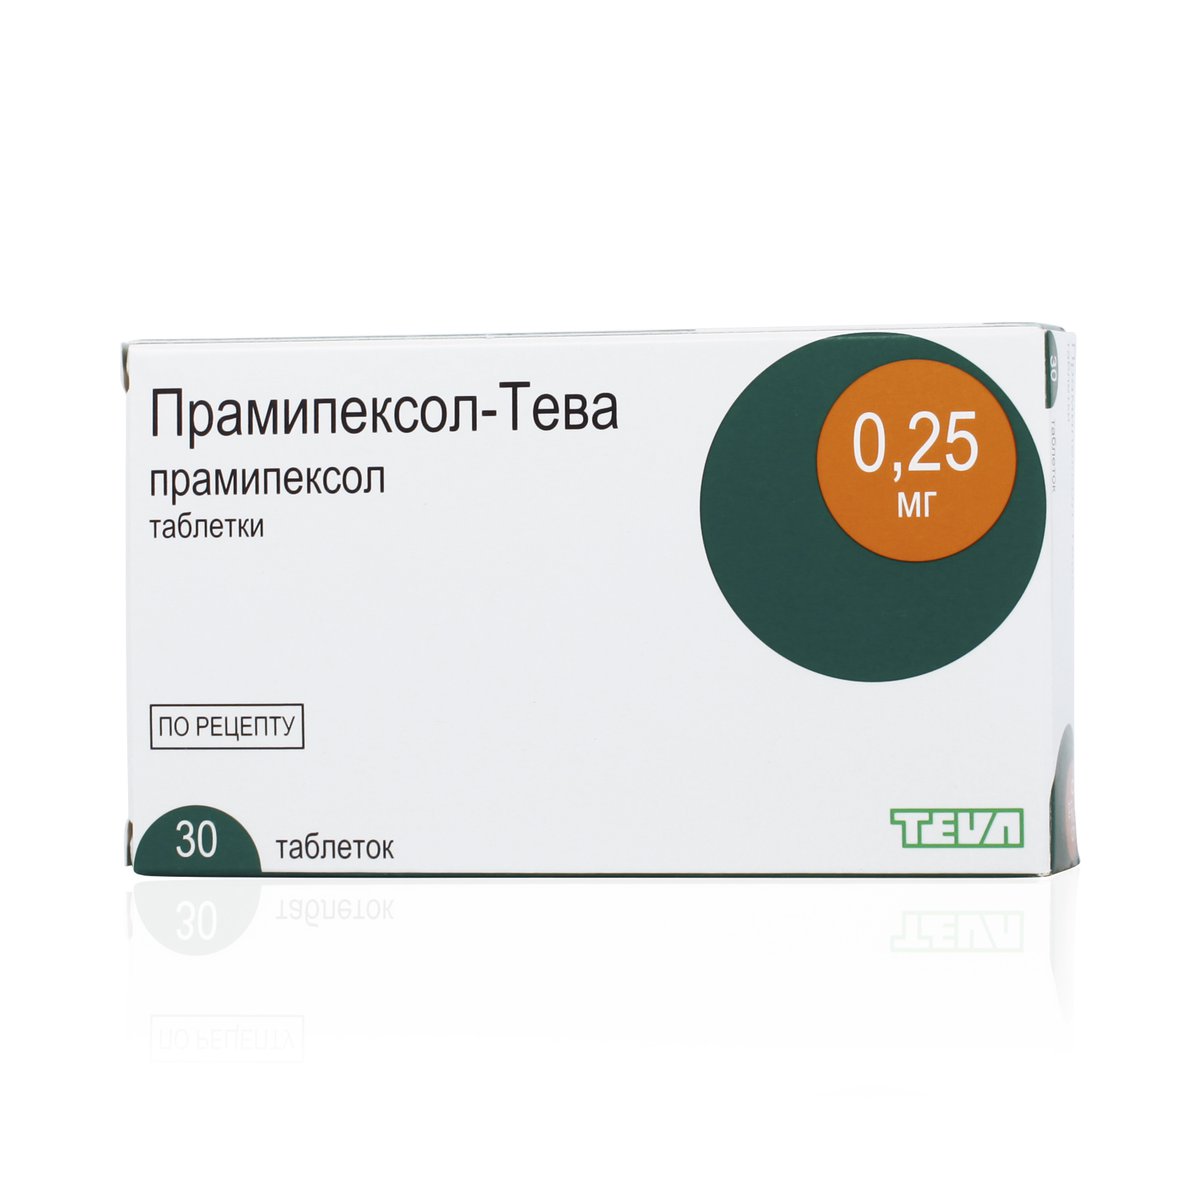 Прамипексол-Тева (таблетки, 30 шт, 0,25 мг) - цена,  онлайн в .